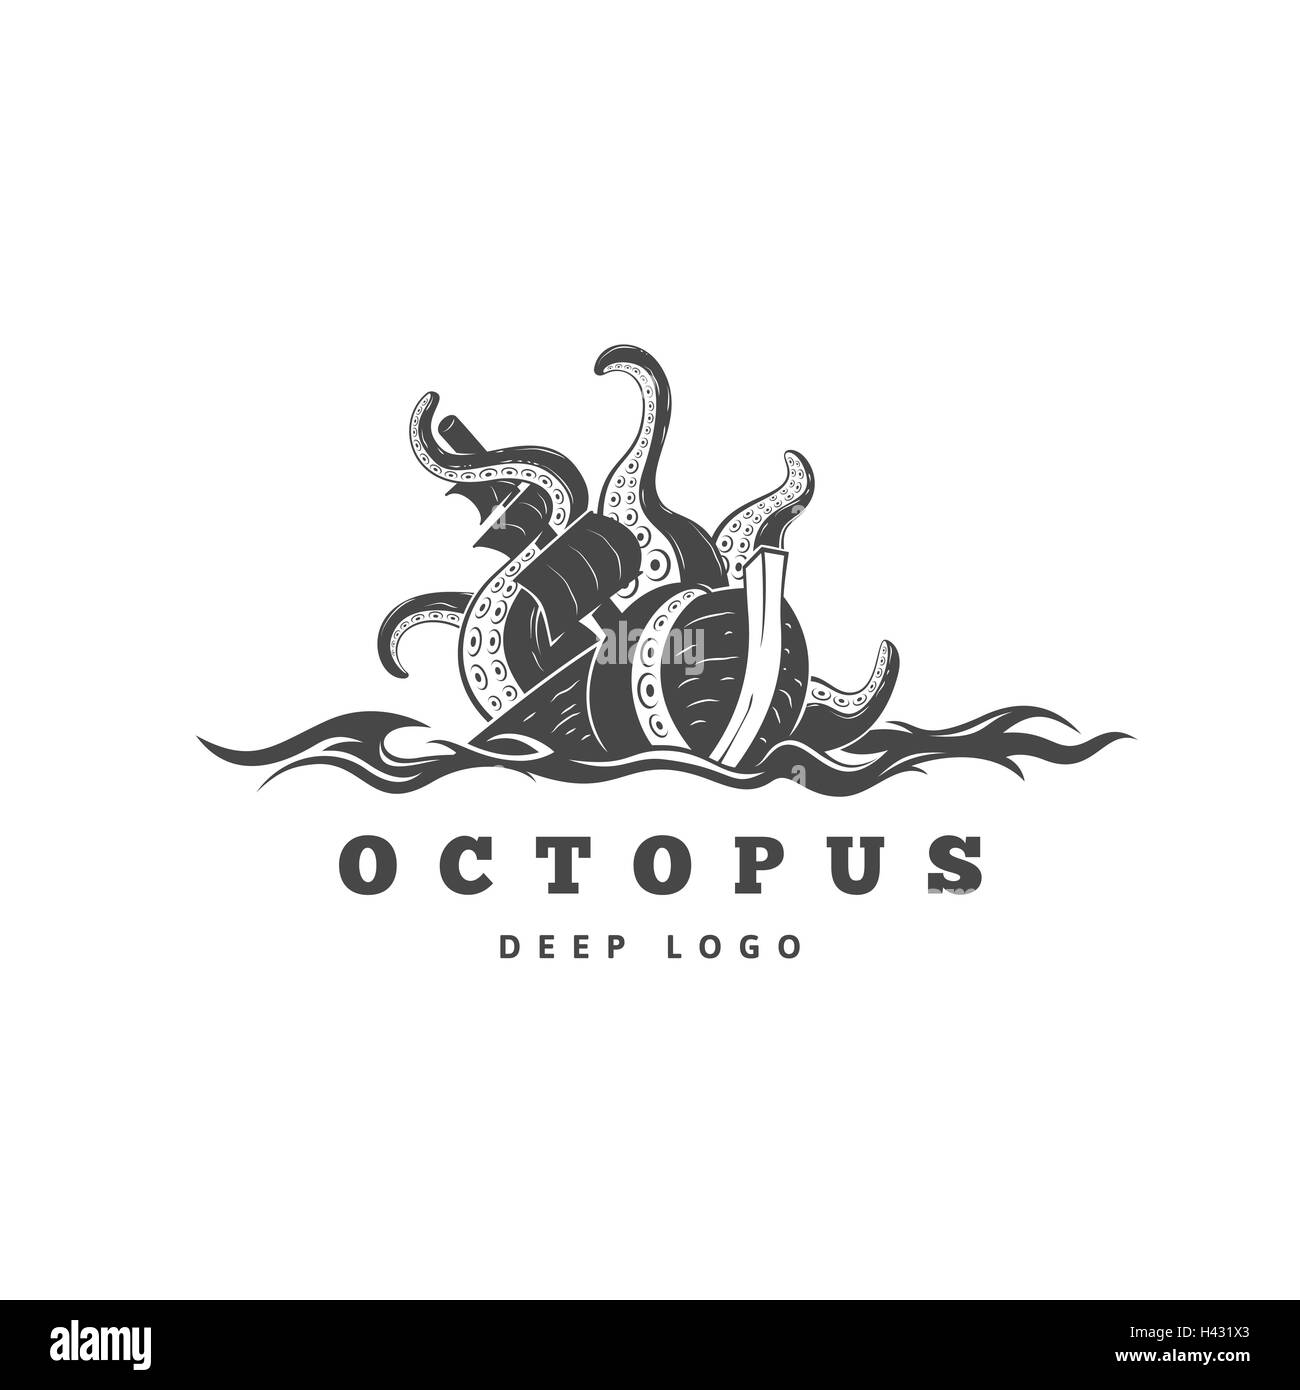 Giant evil kraken logo, silhouette octopus sea monster with tentacles Stock Vector